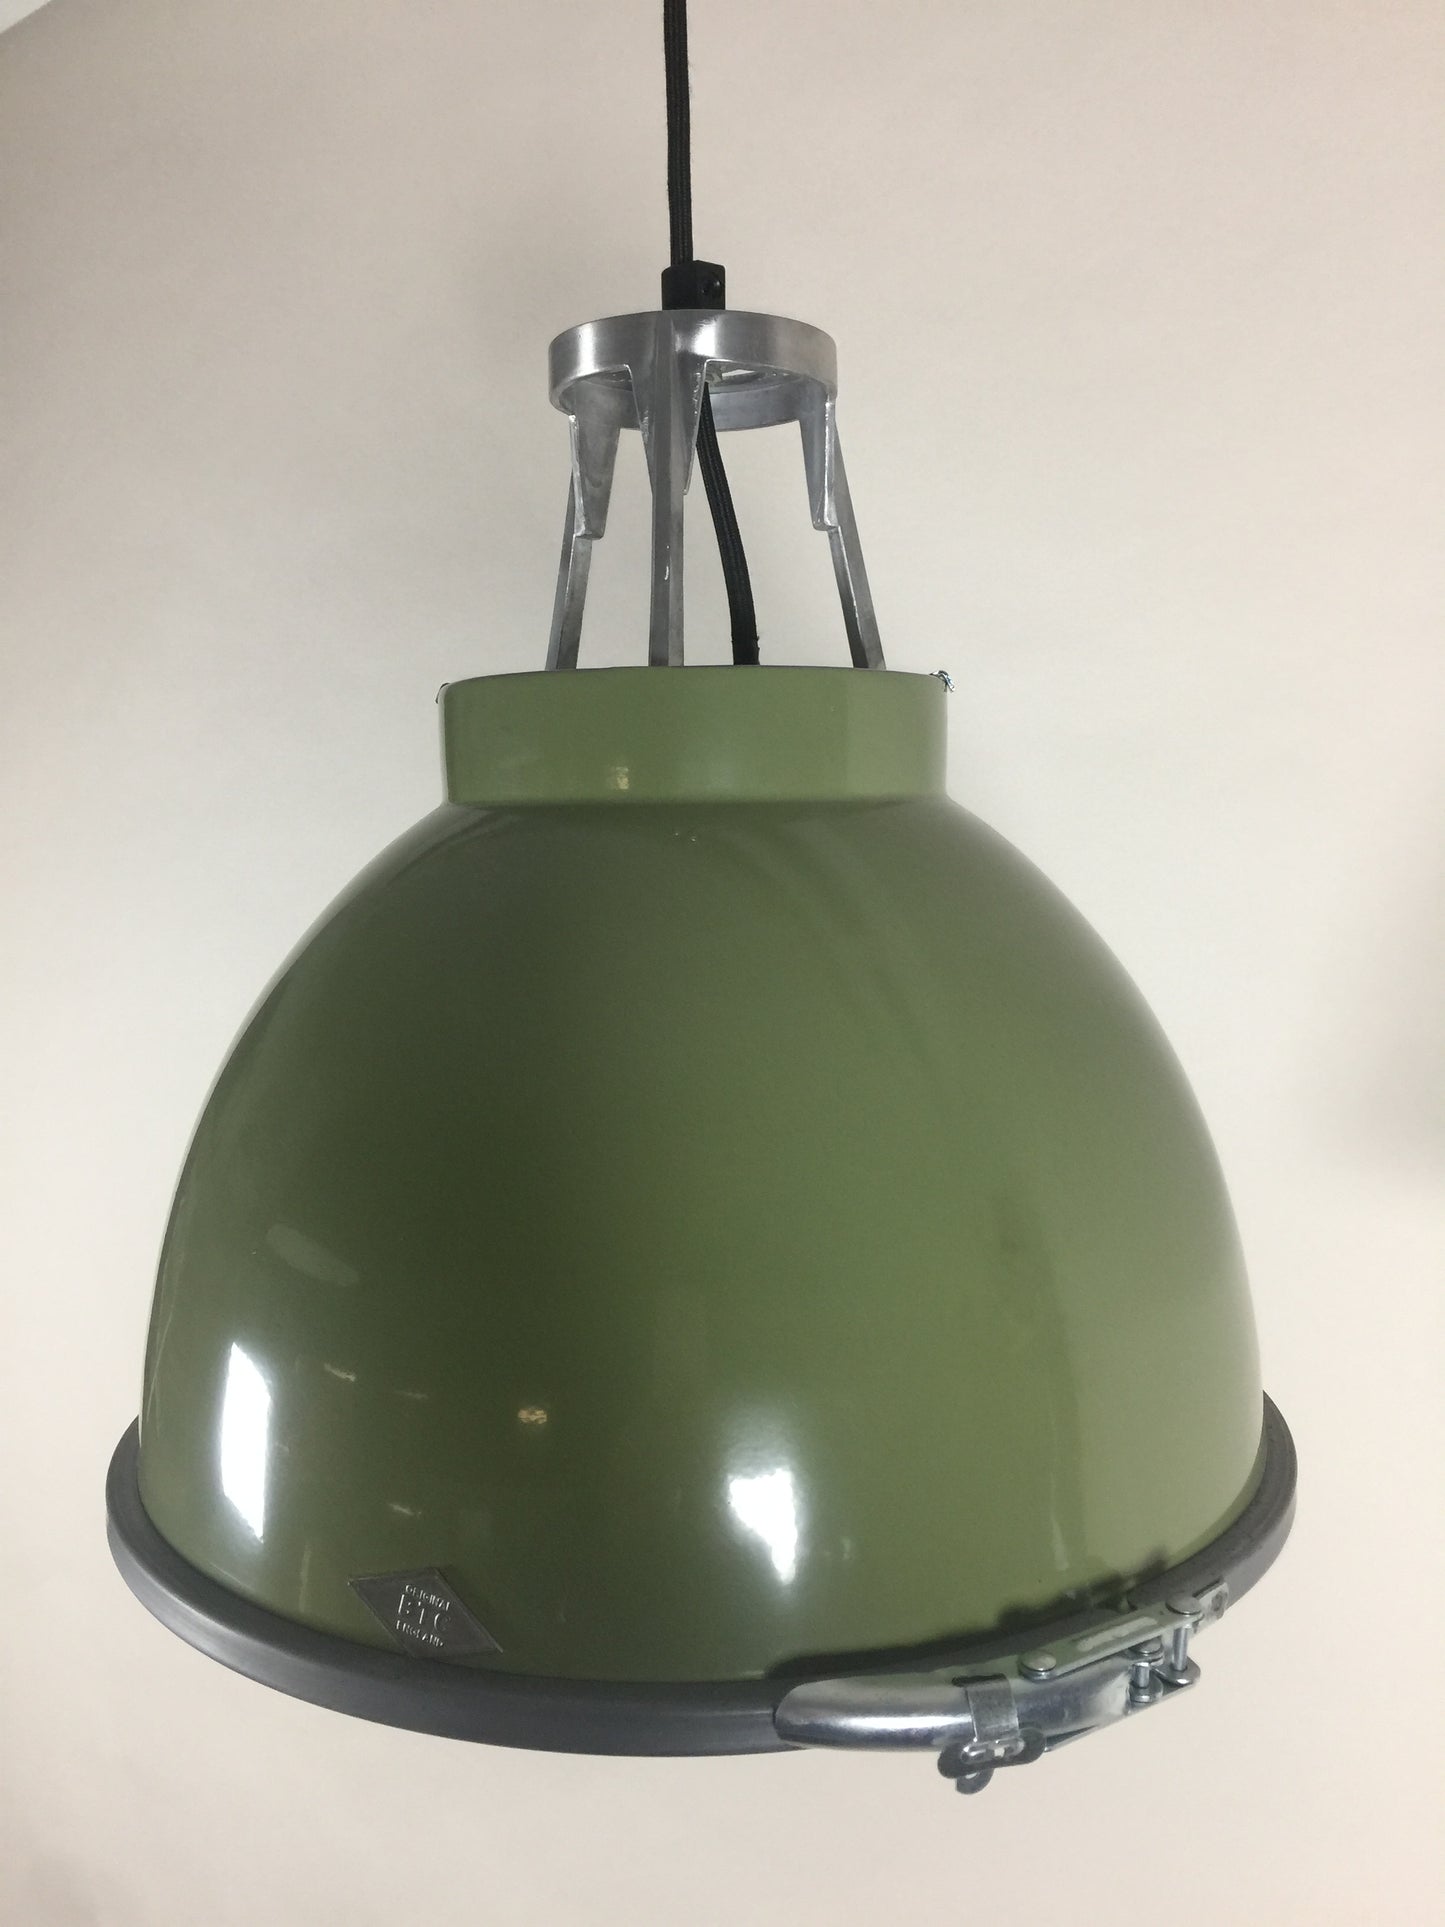 Original BTC lampe -  Titan i flot grøn farve med sandblæst glas